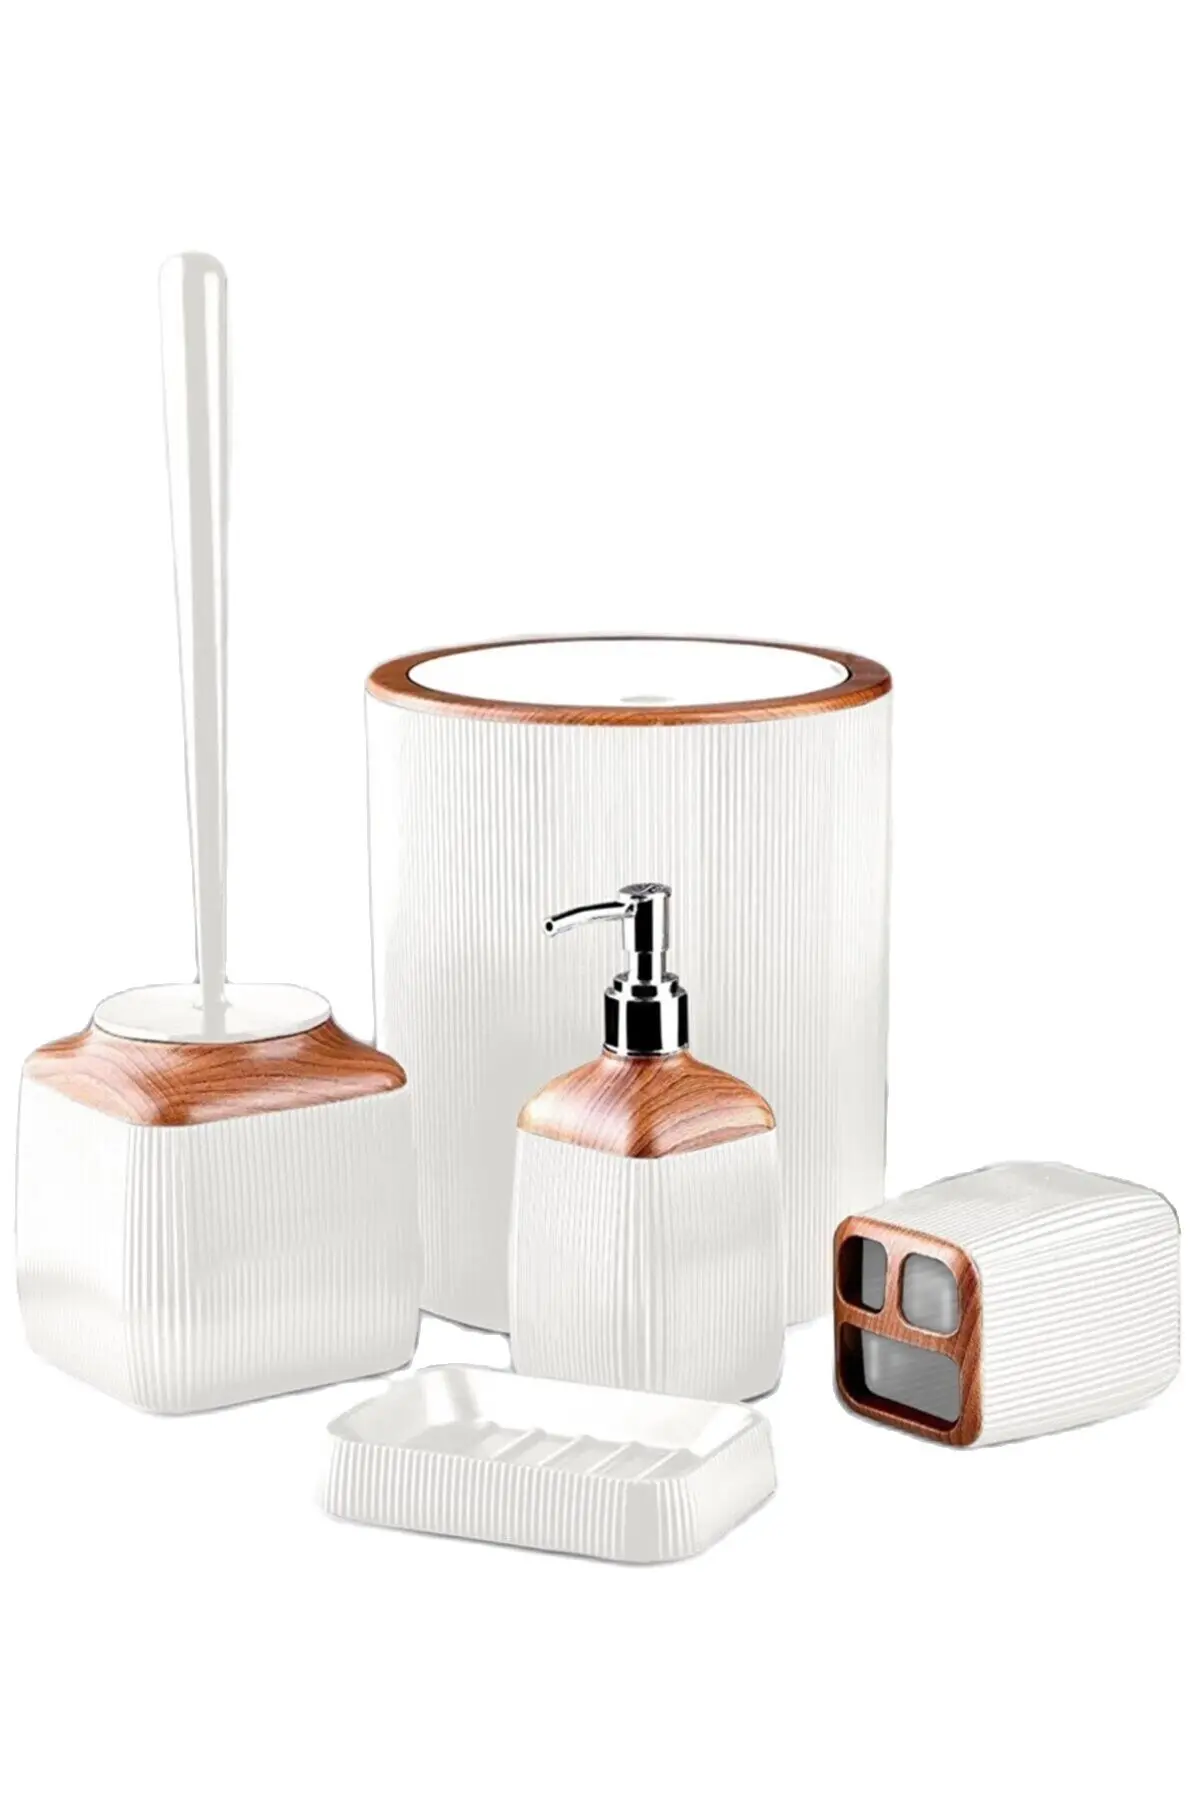 

Набор аксессуаров для ванной комнаты, пластиковый деревянный белый держатель для зубных щеток Lux, 5 шт., диспенсер для жидкого и твердого мыла, контейнер для мусора, щетка для туалета